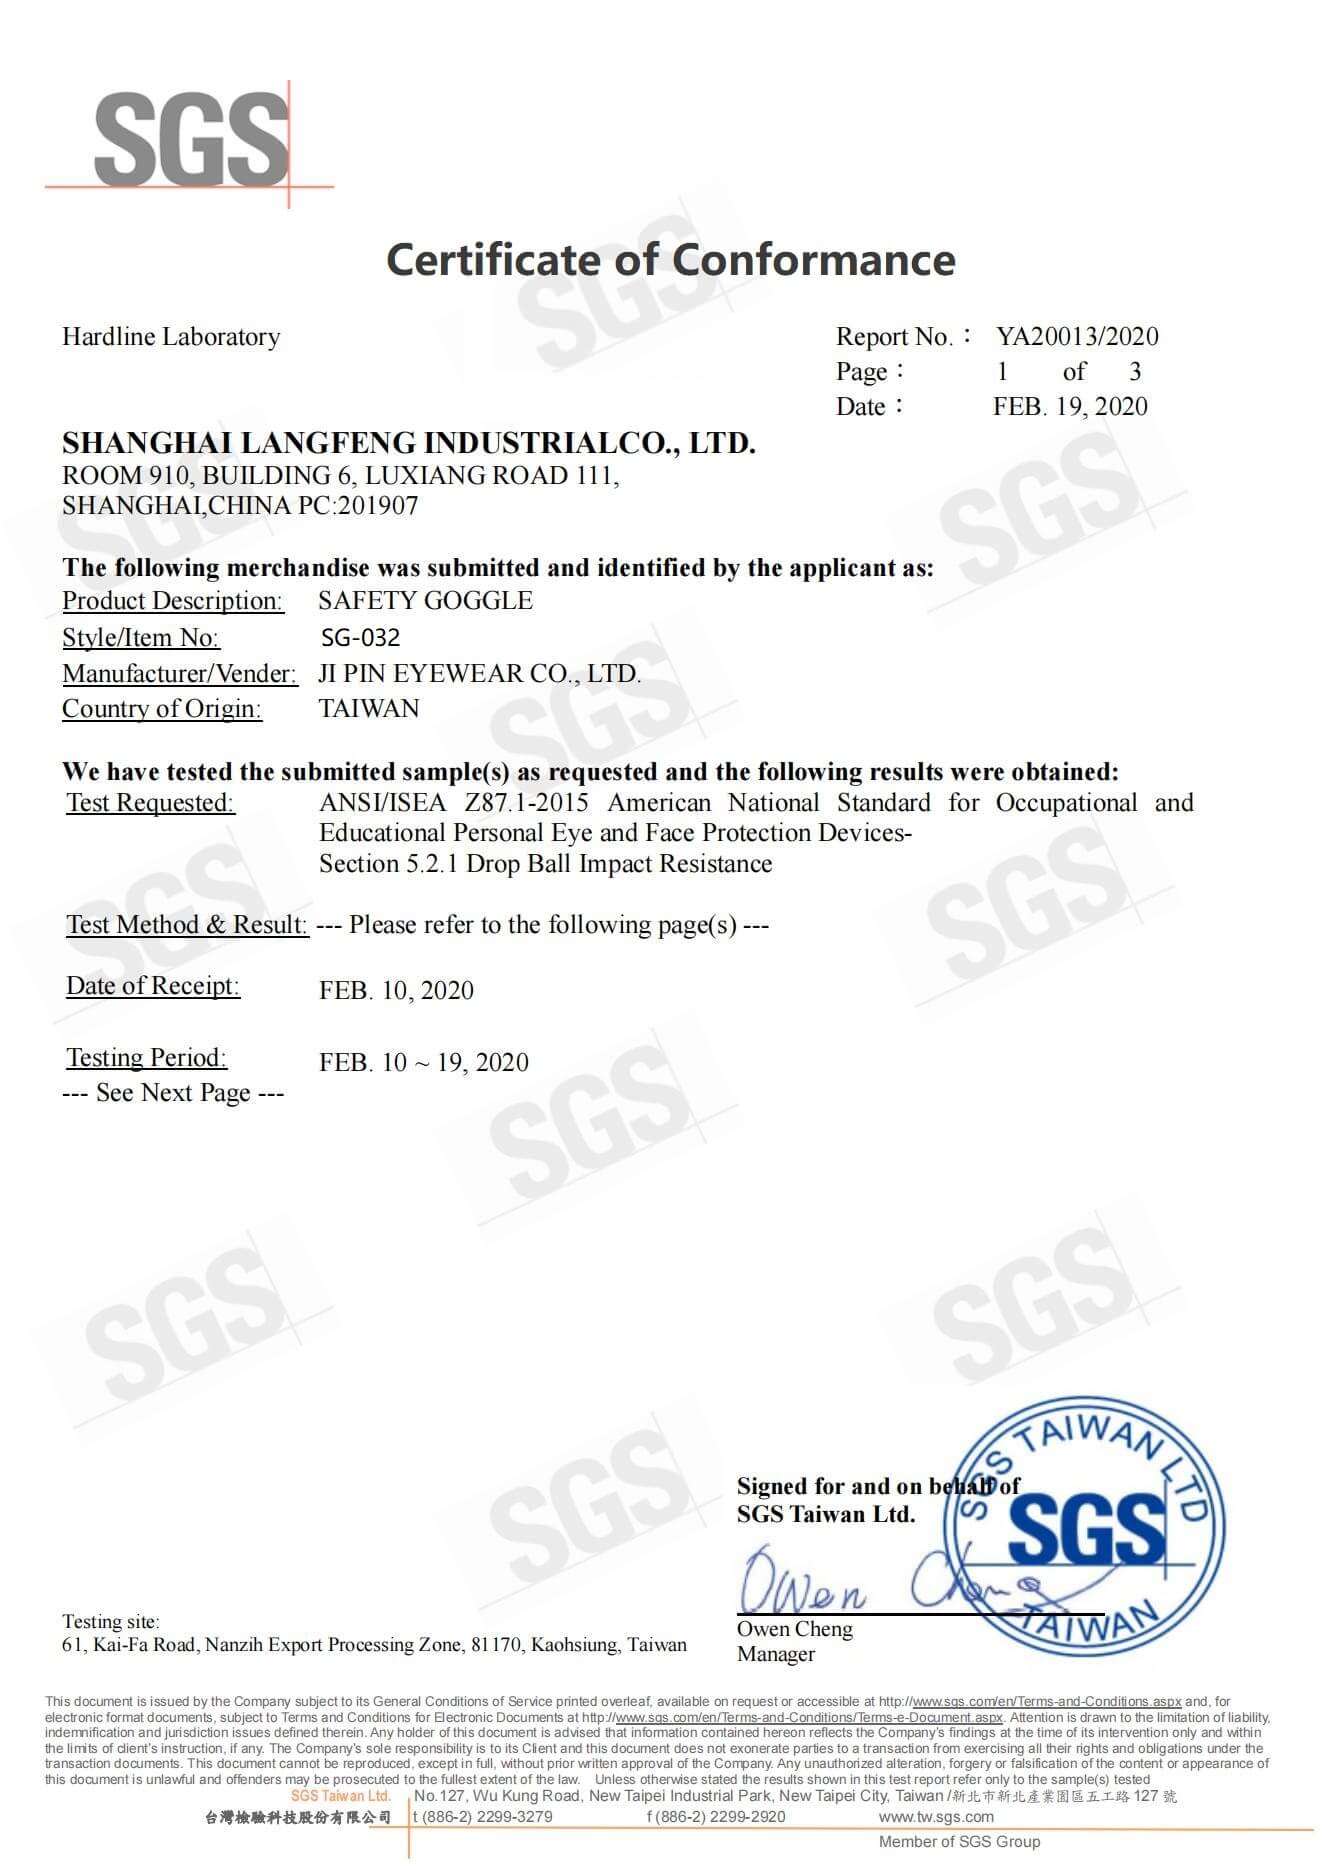 SG032 US ANSI-Zertifizierung